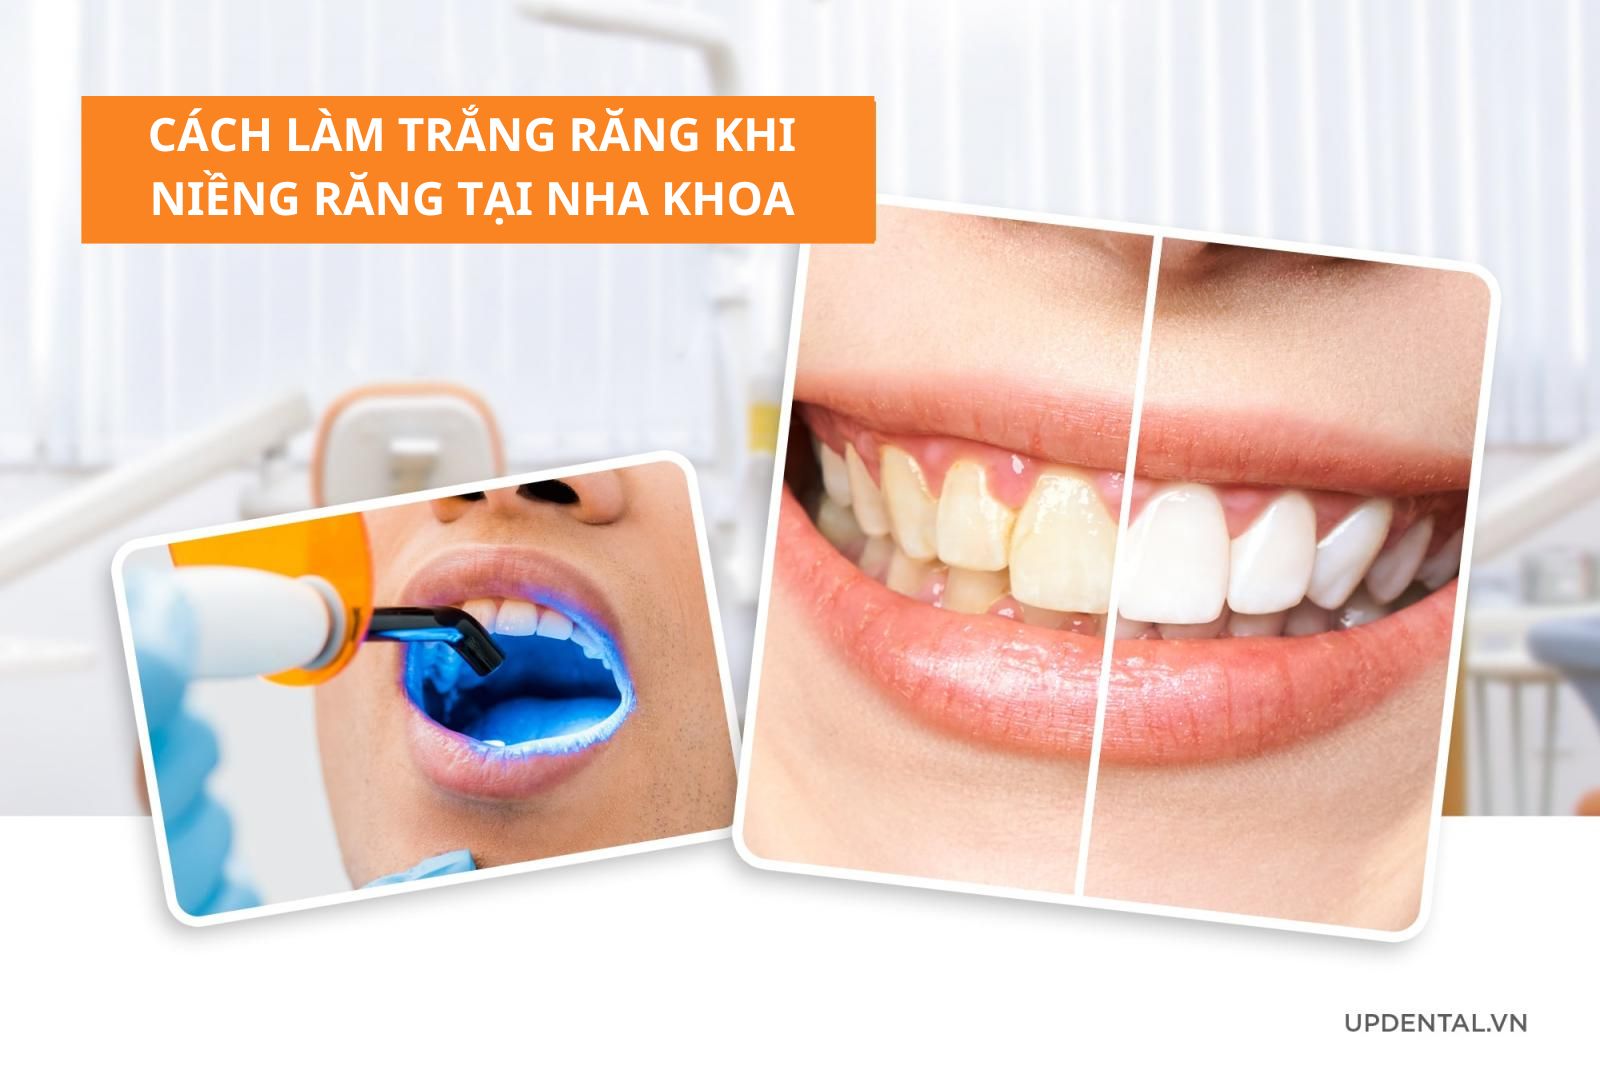 Cách làm trắng răng khi niềng răng tại Nha khoa